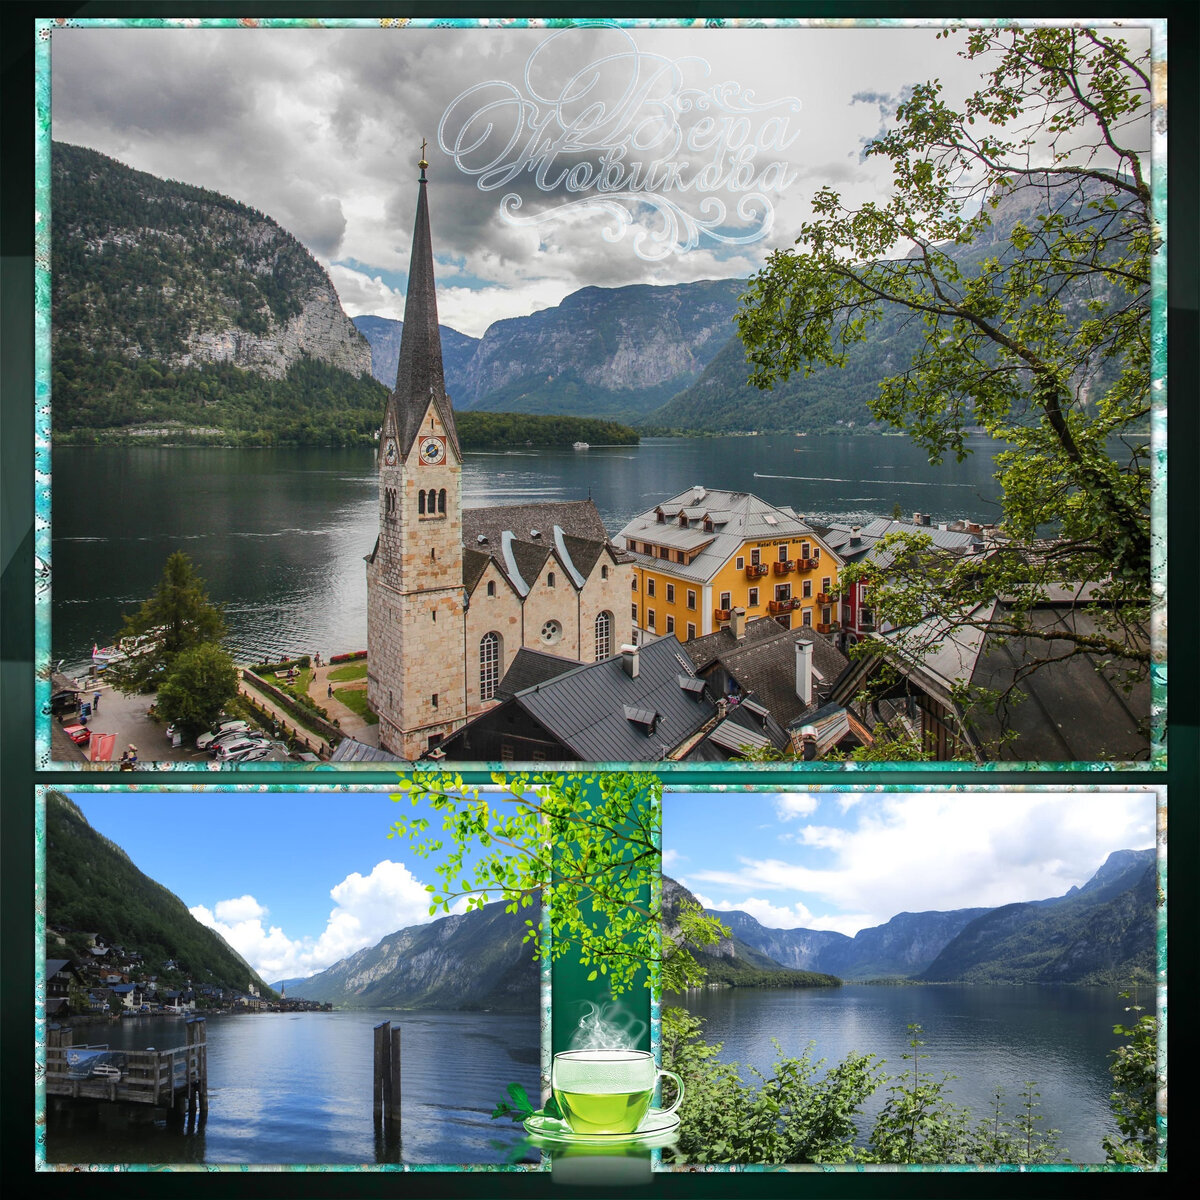 Халльштатт - поистине завораживающее место,  австрийская сказка у озера, среди больших гор!